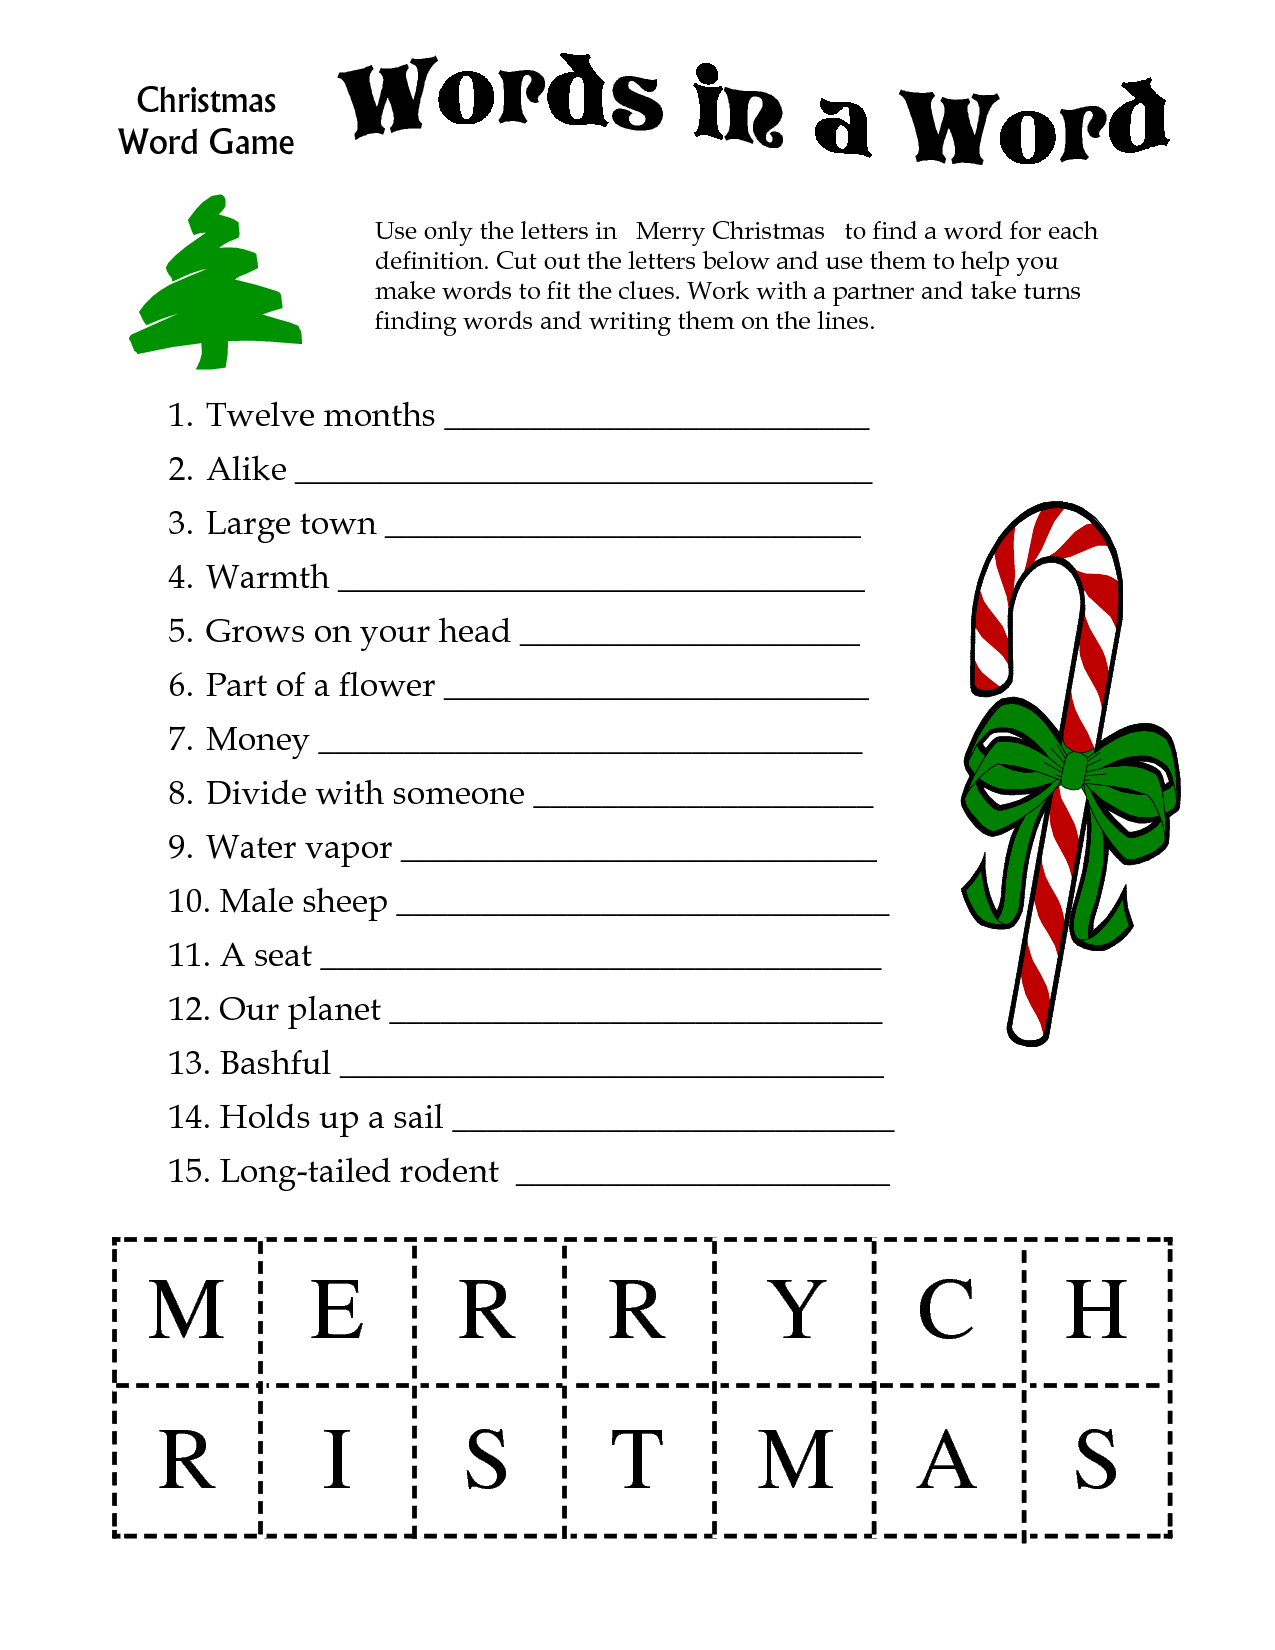 Free Printable Word Games For Christmas – Festival Collections - Free Printable Word Games